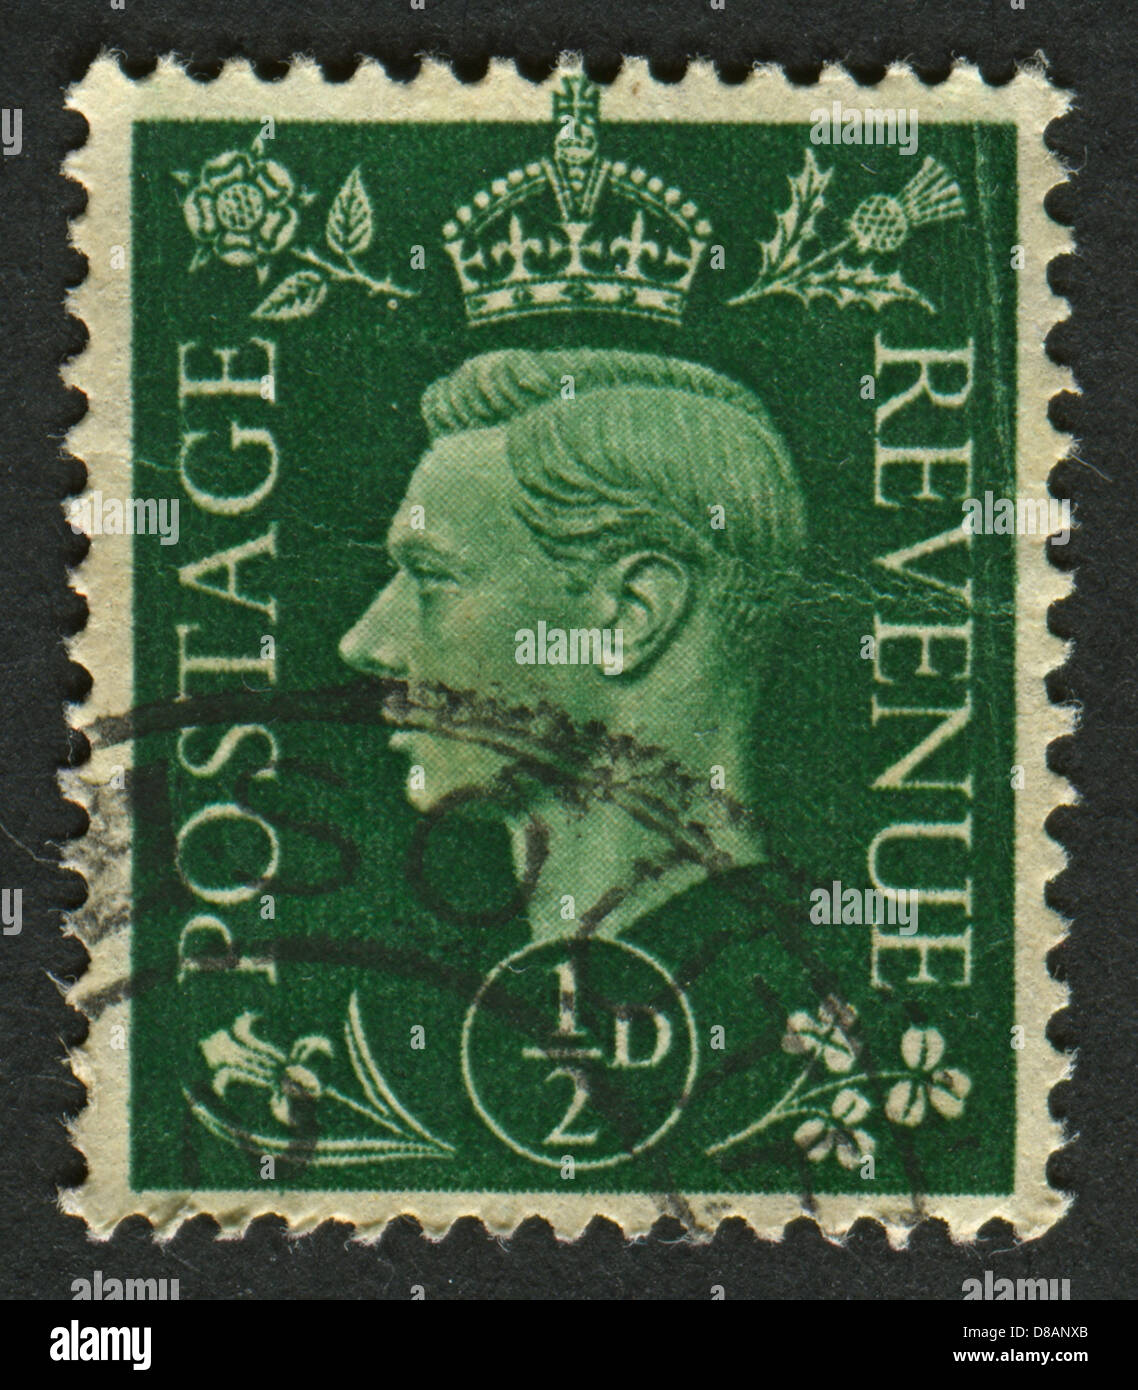 Eine Briefmarke gedruckt in Großbritannien zeigt, dass Bild von George VI (Albert Frederick Arthur George), König des Vereinigten Königreichs war. Stockfoto